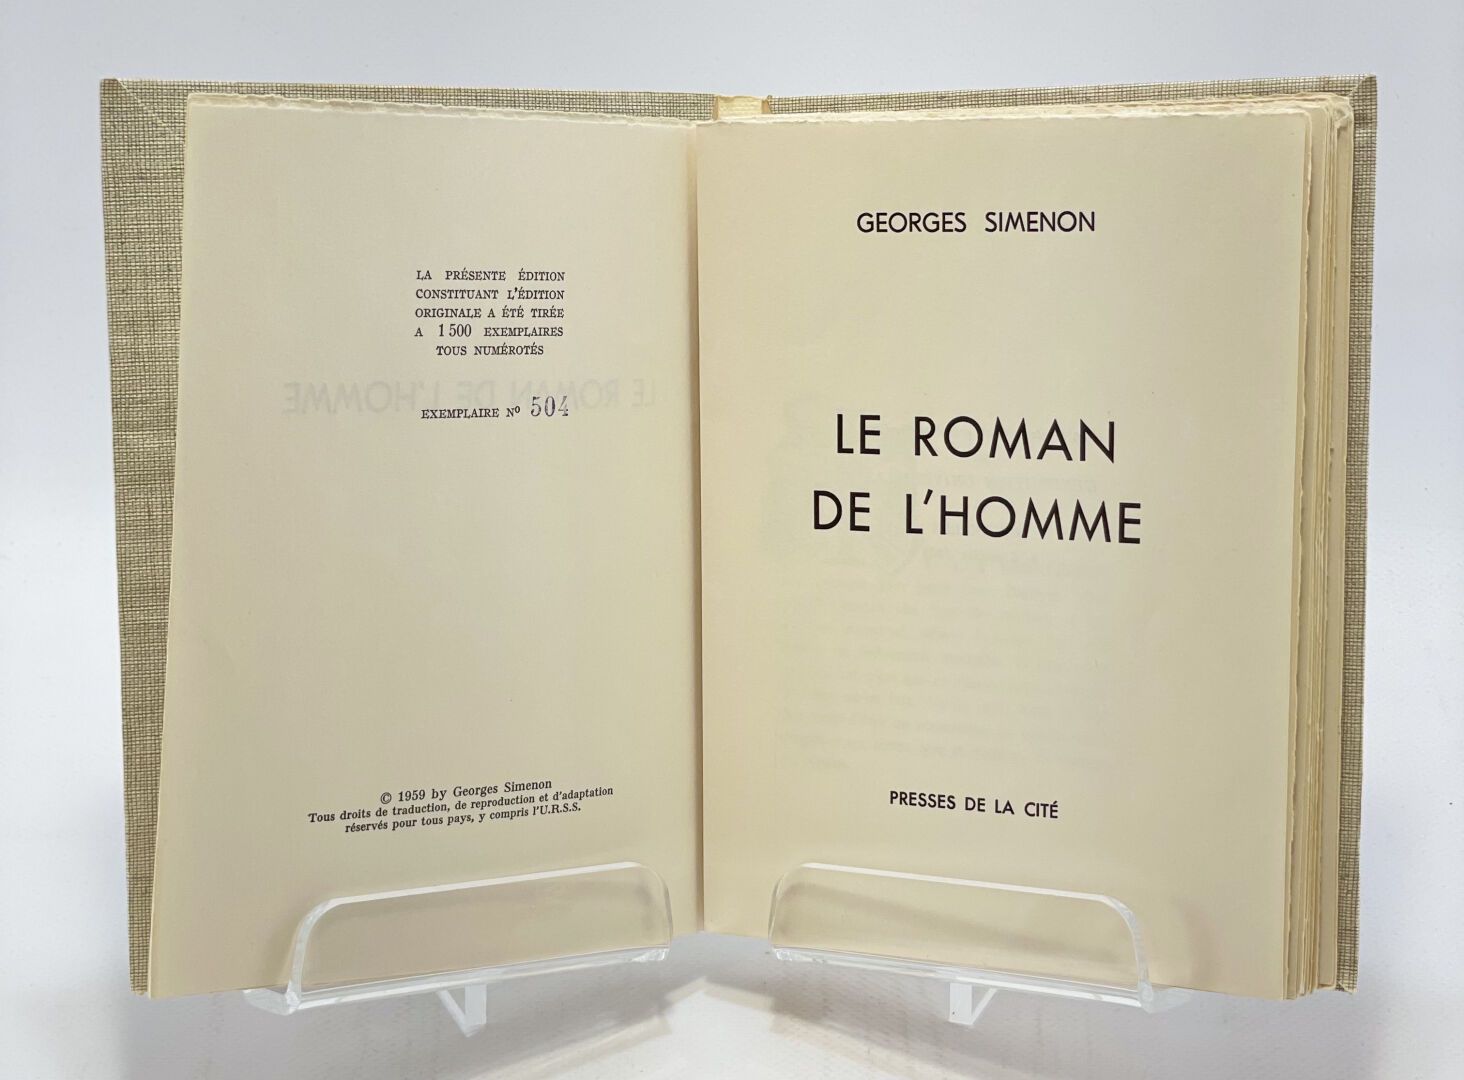 SIMENON. Le Roman de l'homme. SIMENON Georges. Le Roman de l'homme.

S.L., Press&hellip;